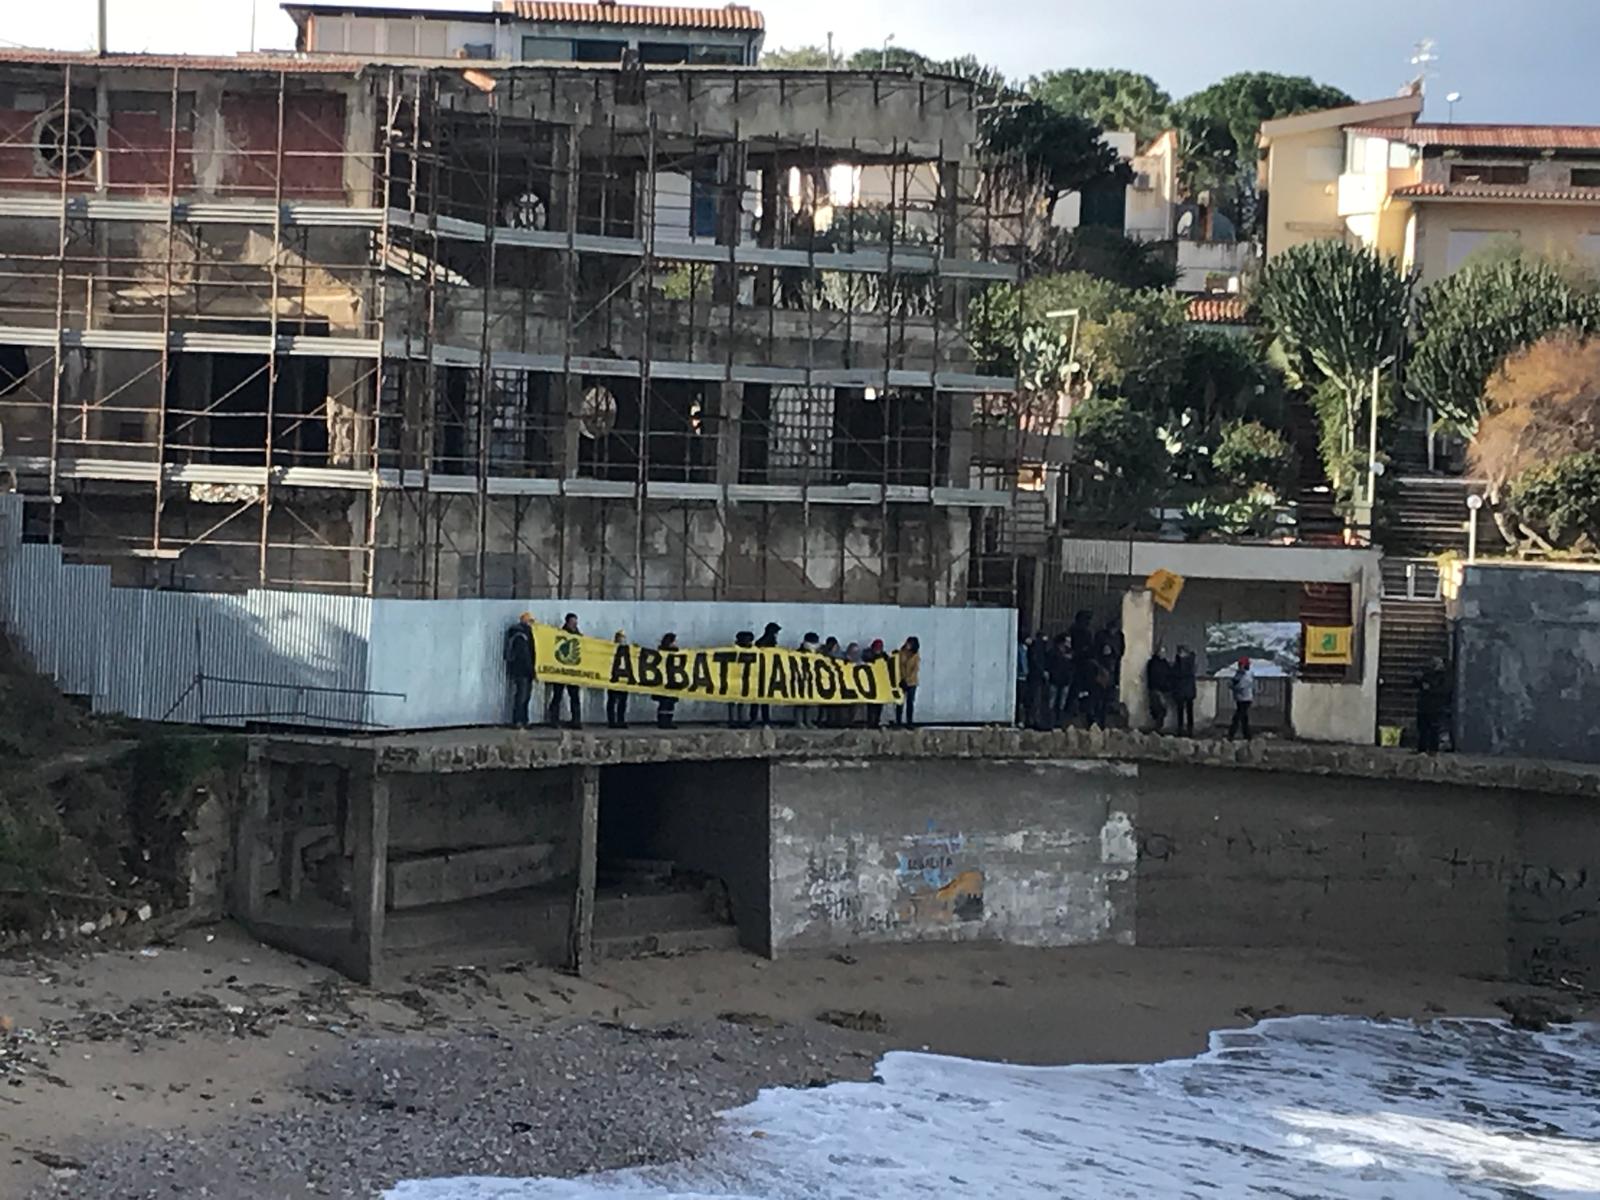 Abusivismo edilizio, report Legambiente: «In Campania si fa fatica a demolire». Tutti i dati